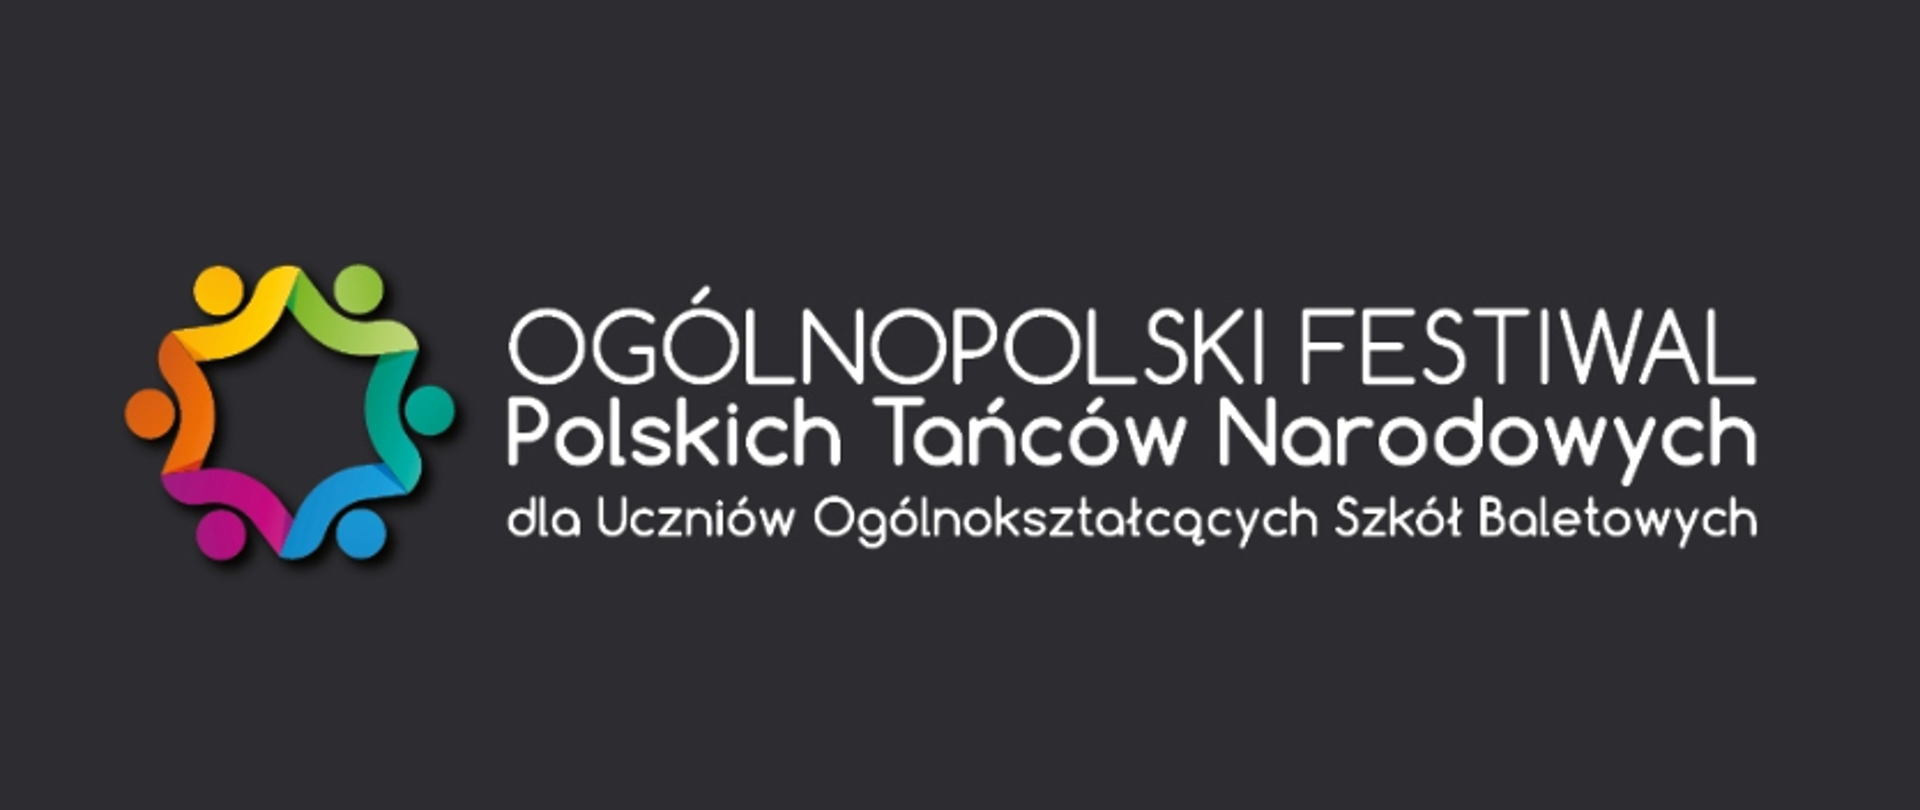 zdjęcie: Na czarnym tle wielokolorowe logo Ogólnopolskiego Festiwalu Polskich Tańców Narodowych dla Uczniów Ogólnokształcących Szkół Baletowych w Koszęcinie oraz napis z nazwą festiwalu